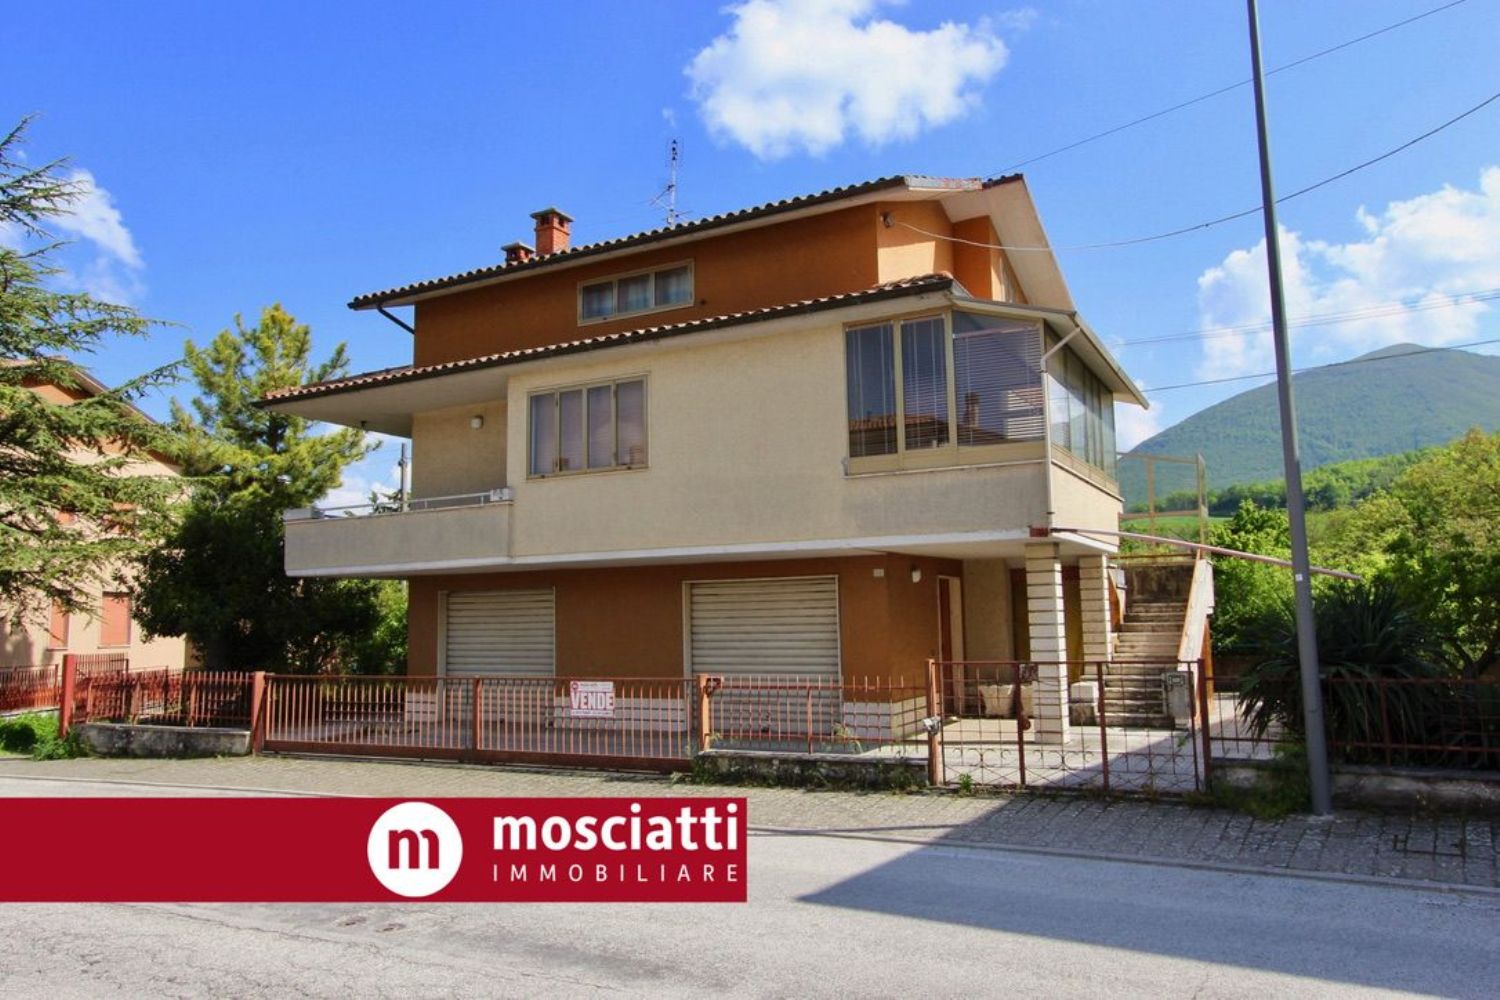 Villa in vendita a Esanatoglia, 2 locali, prezzo € 128.000 | PortaleAgenzieImmobiliari.it